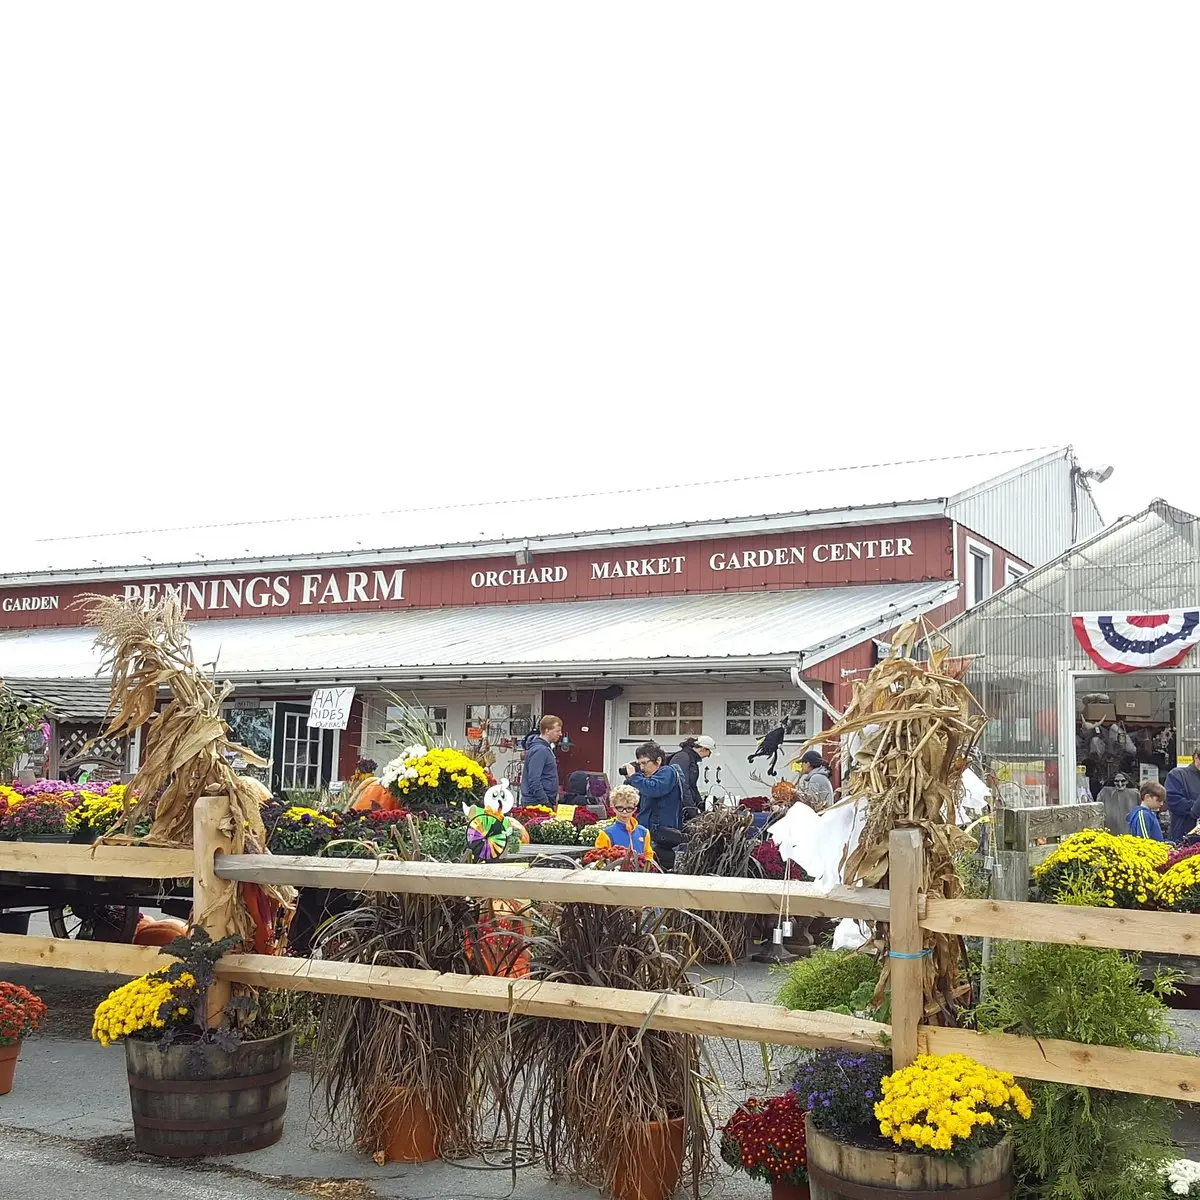 Pennings Farm Market